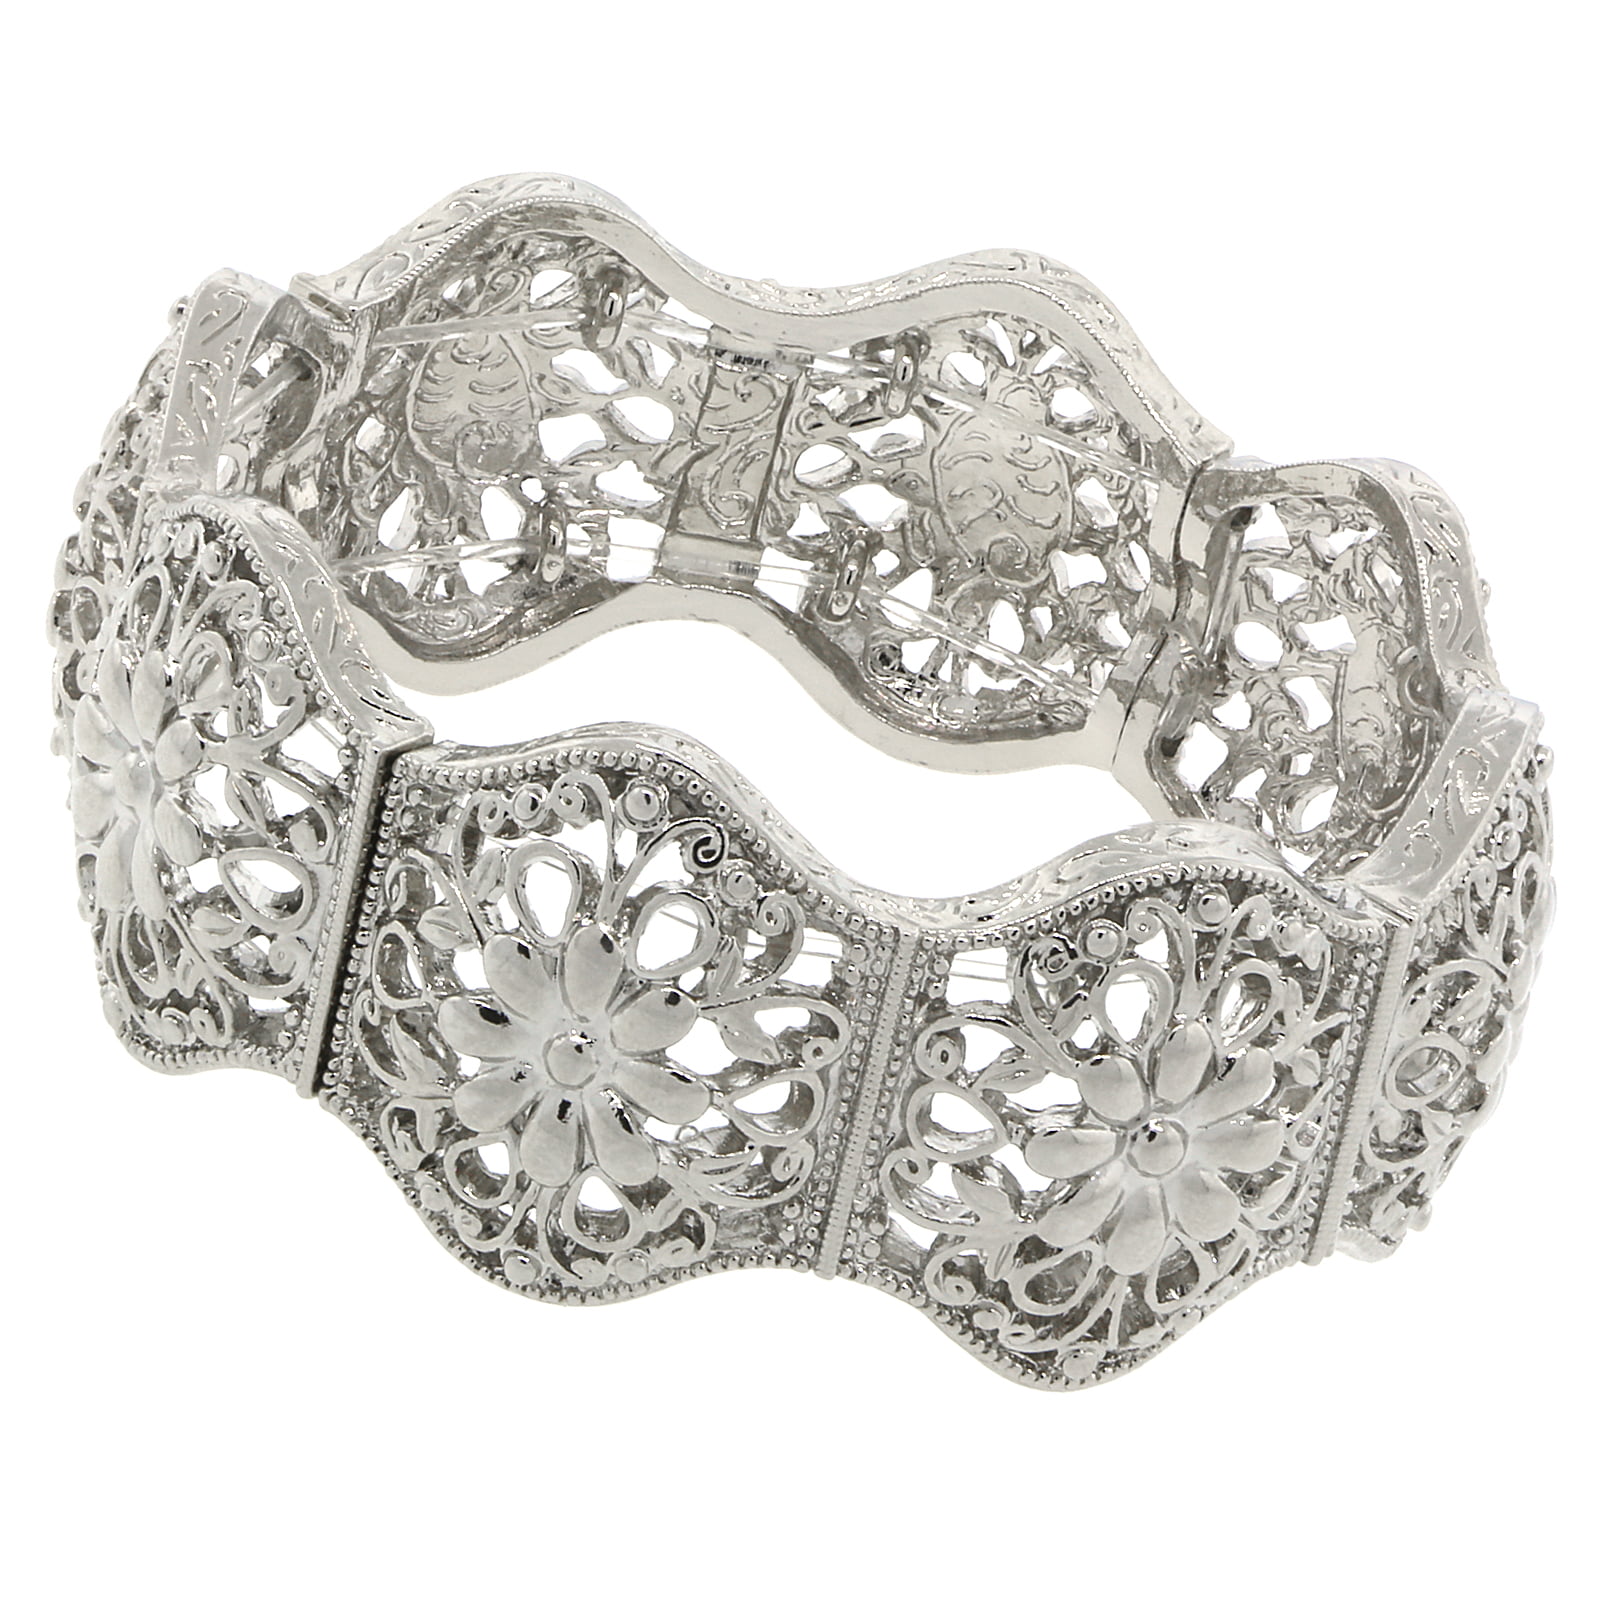 1928 Jewelry Silver-Tone Crystal Flower Stretch Bracelet